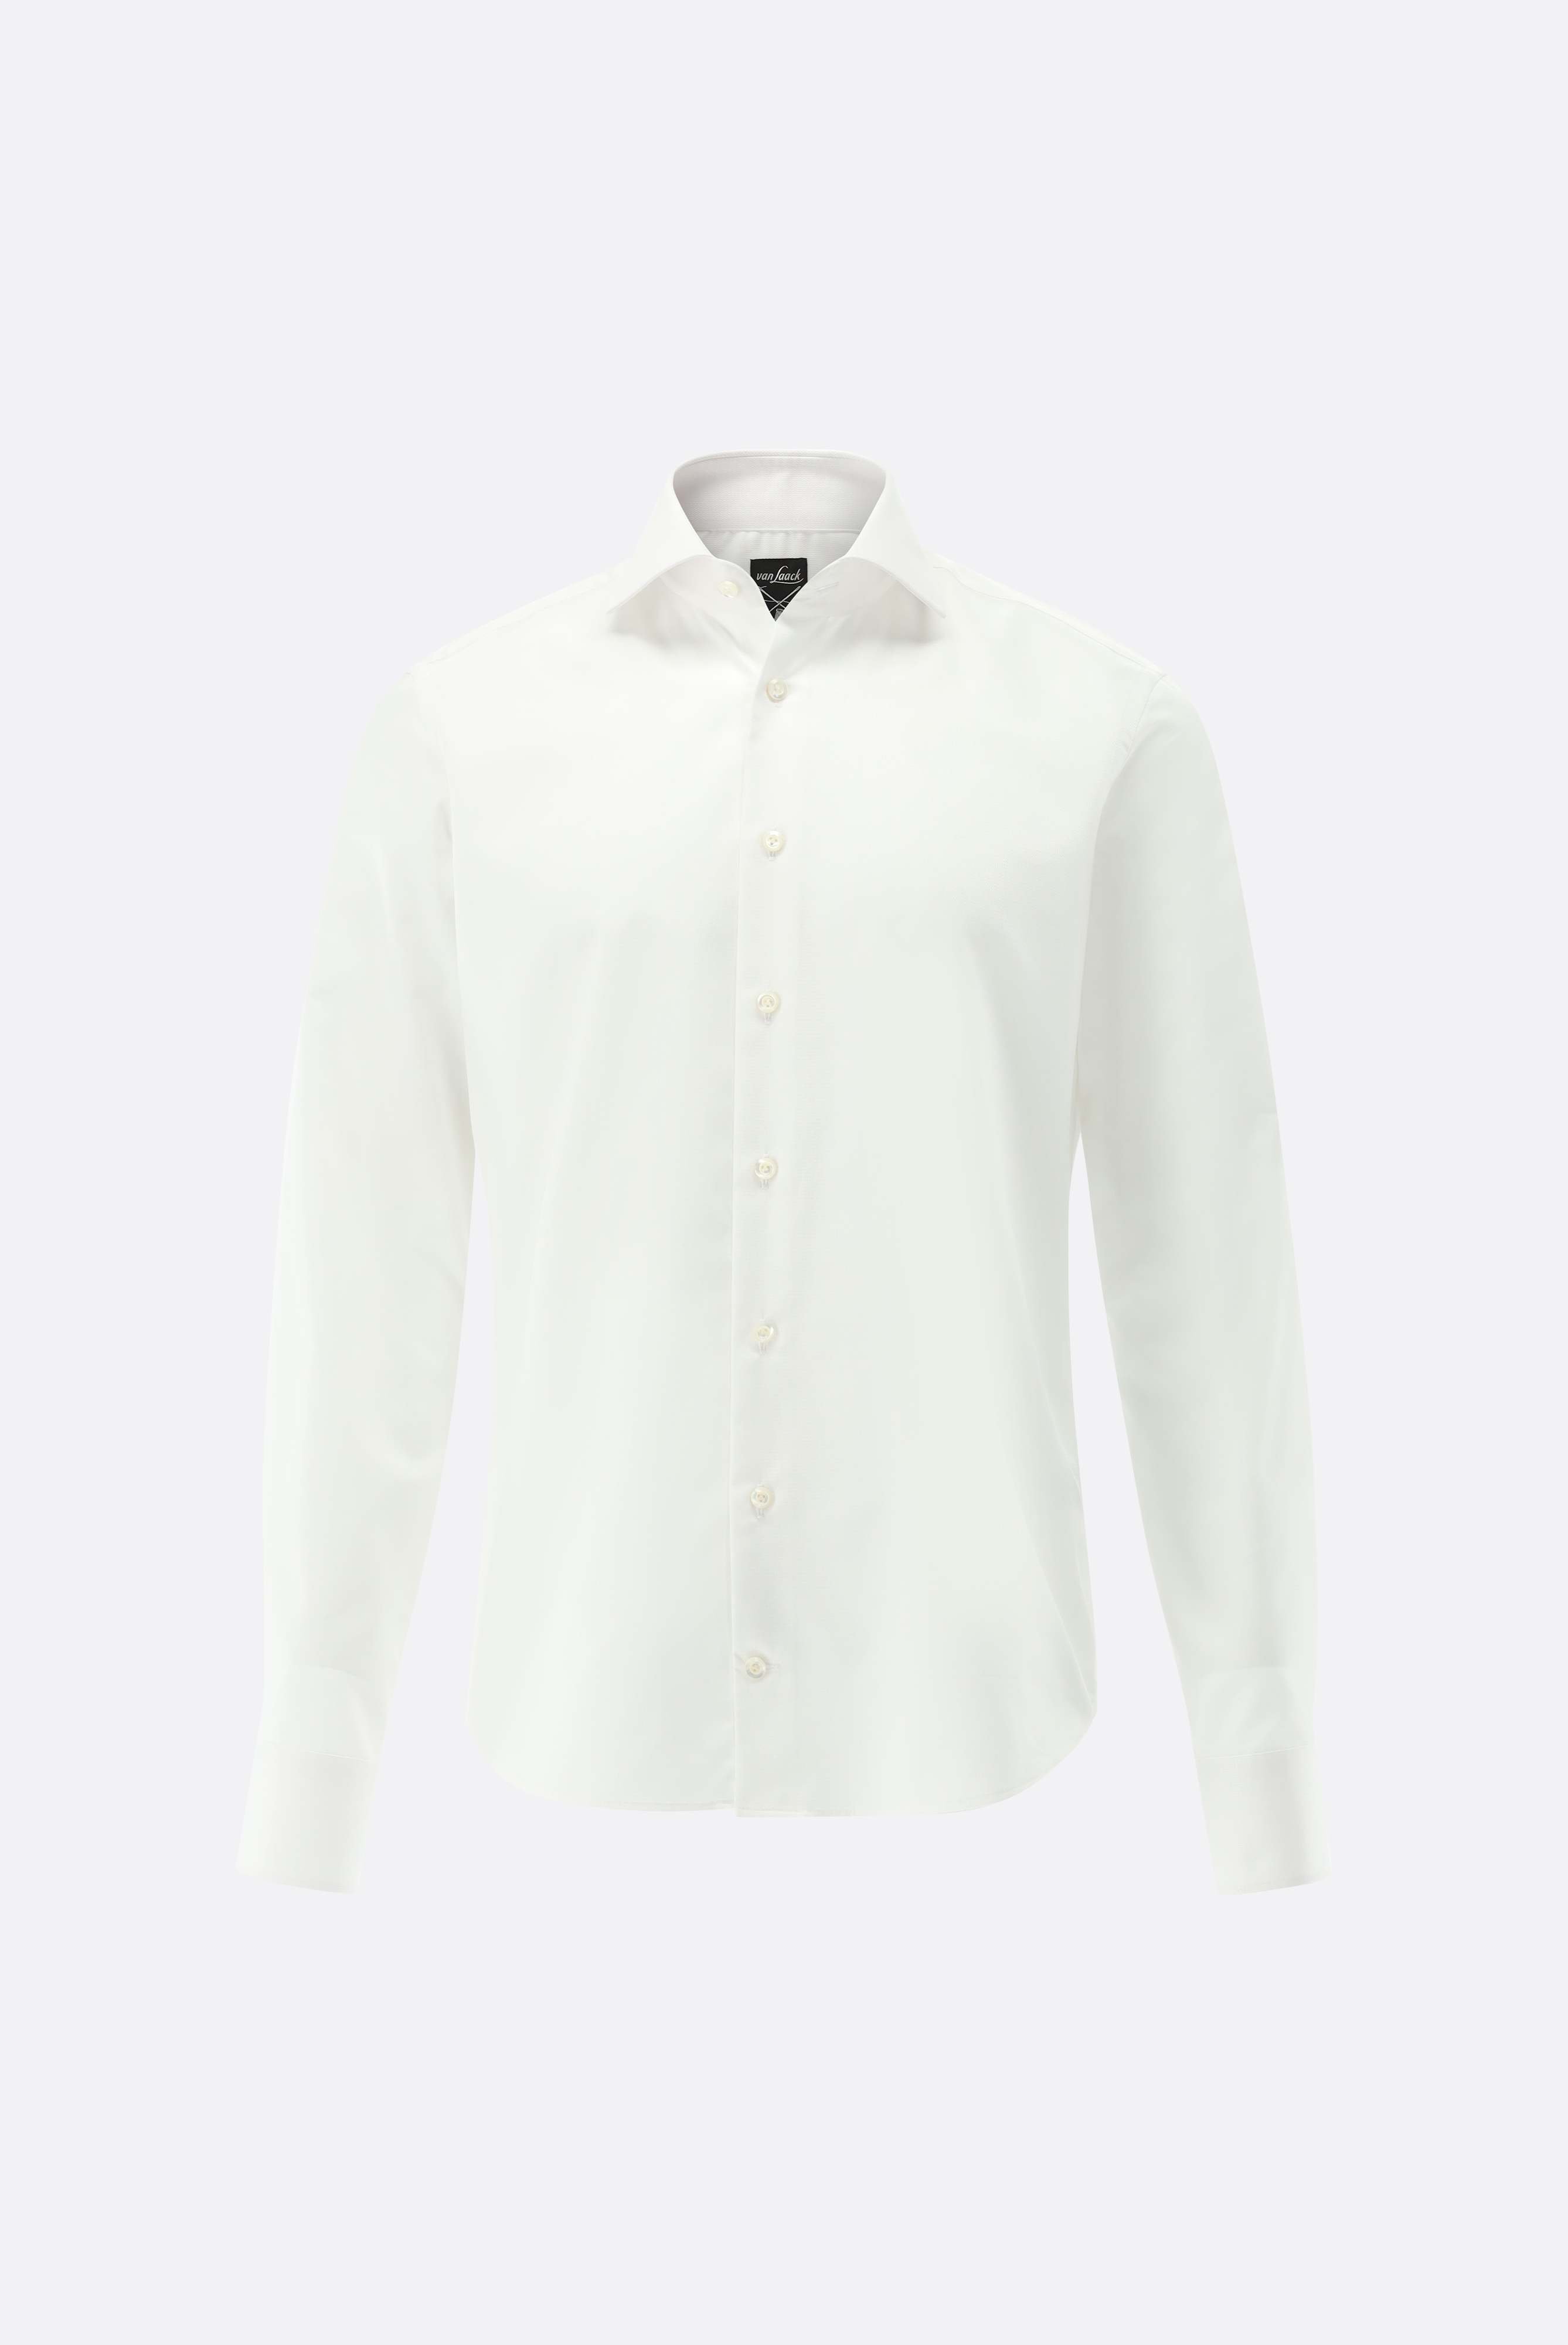 Bügelleichte Hemden+Bügelfreies Twil Hemd mit Struktur Slim Fit+20.2019.BQ.150301.000.38